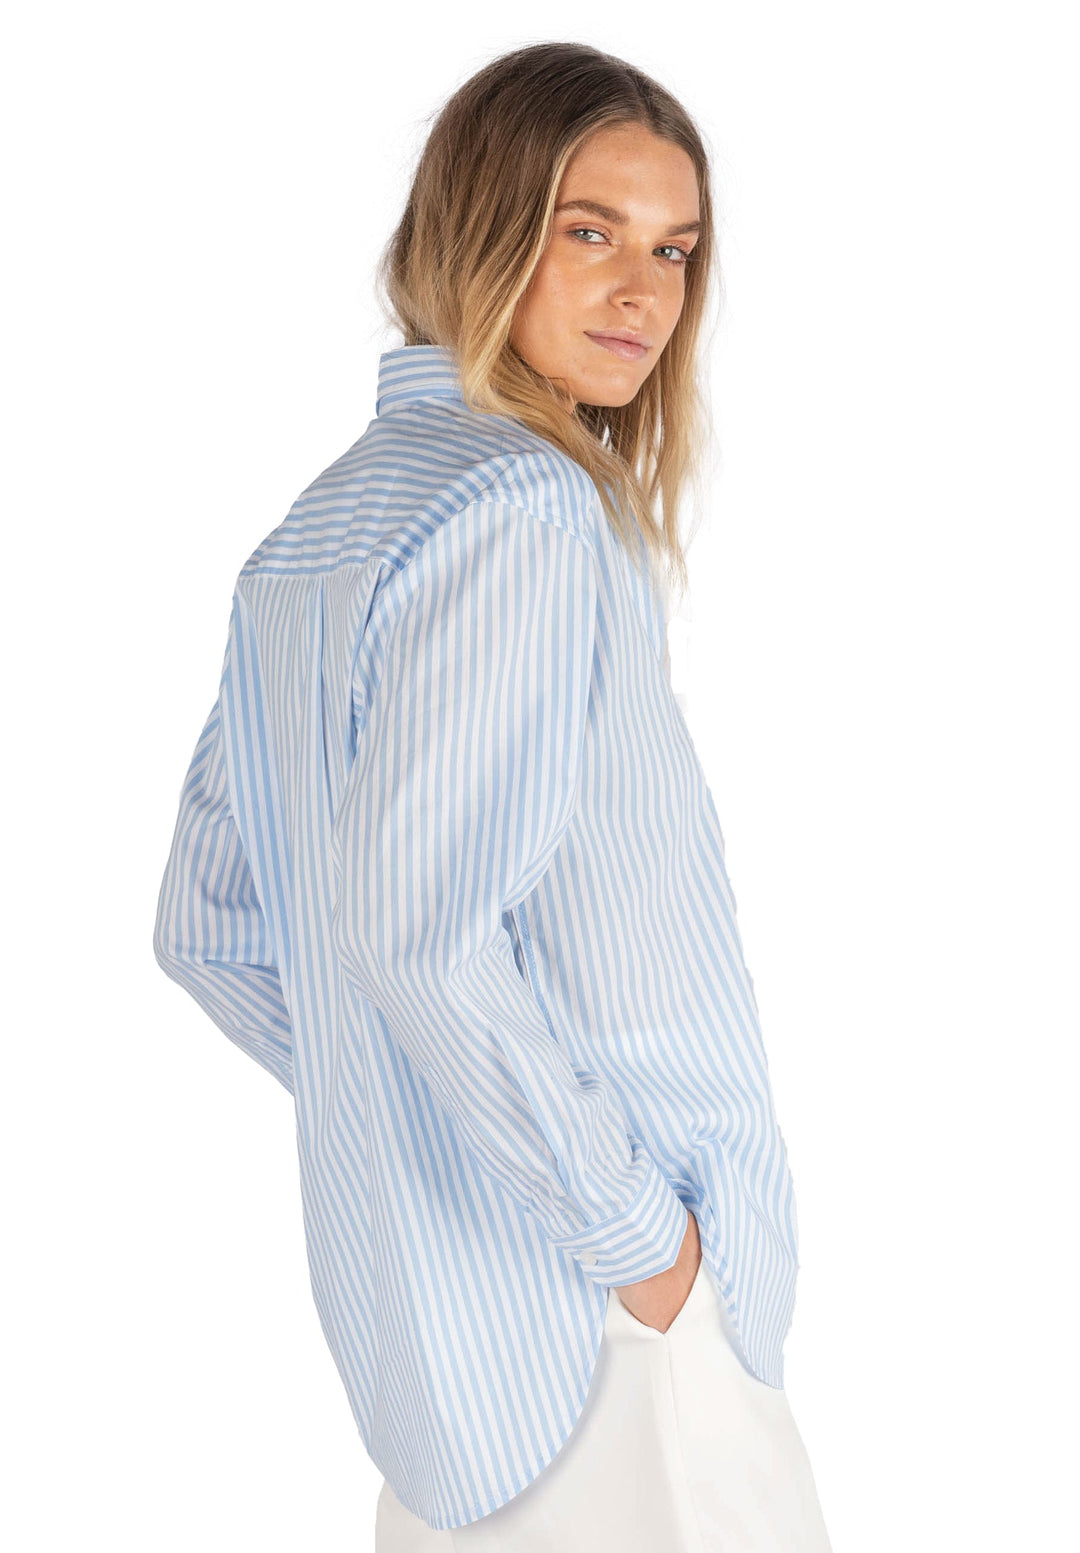 Poppy Sky Blue Stripes Oversize Cotton Shirt